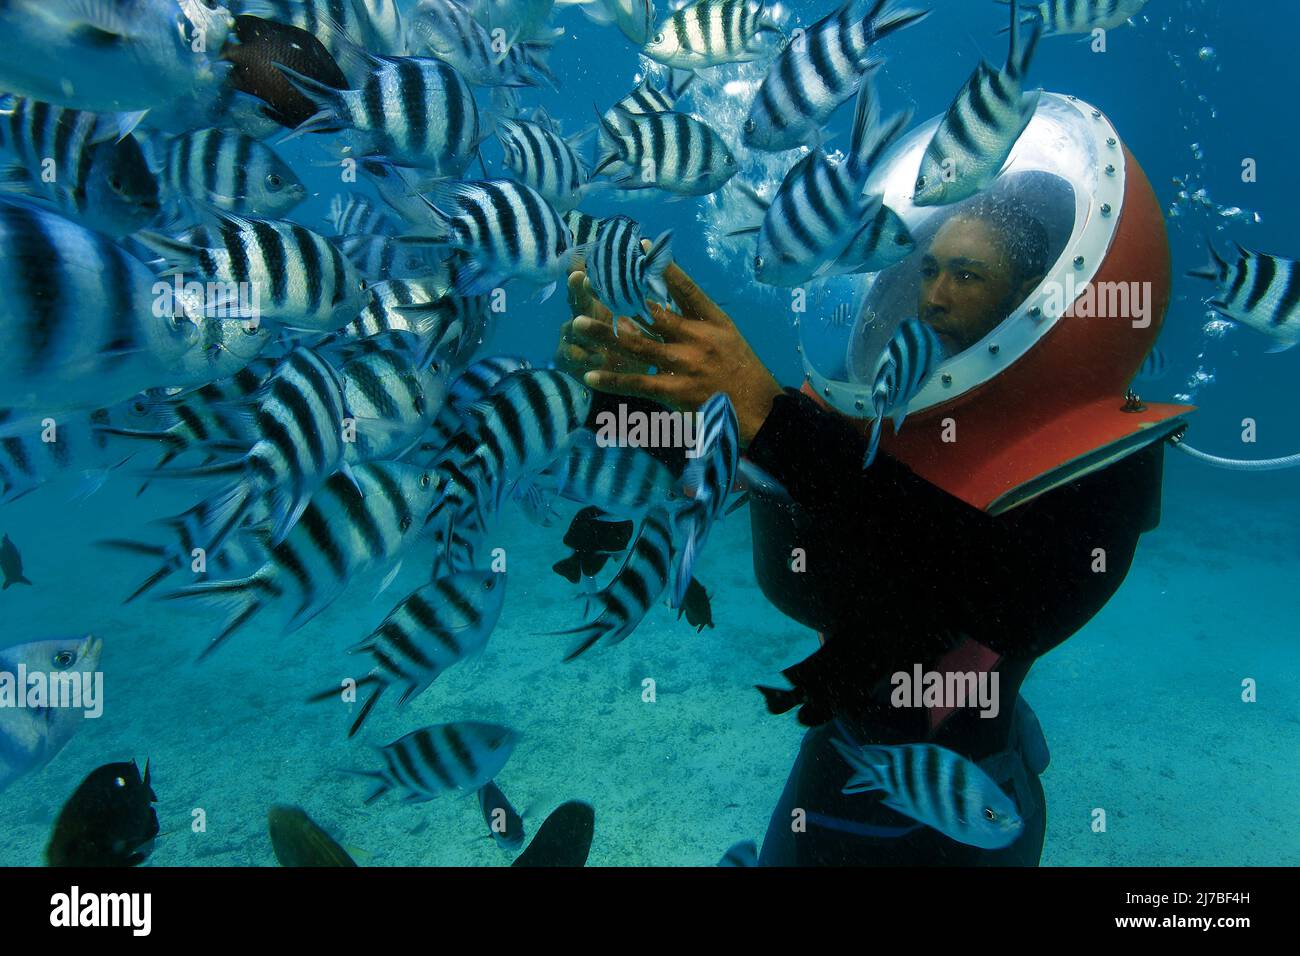 Passeggiata sottomarina, passeggiata subacquea, turista con casco subacqueo circondato di pesci Sergente maggiore o píntanos (Abudefduf saxatilis), Mauritius Foto Stock